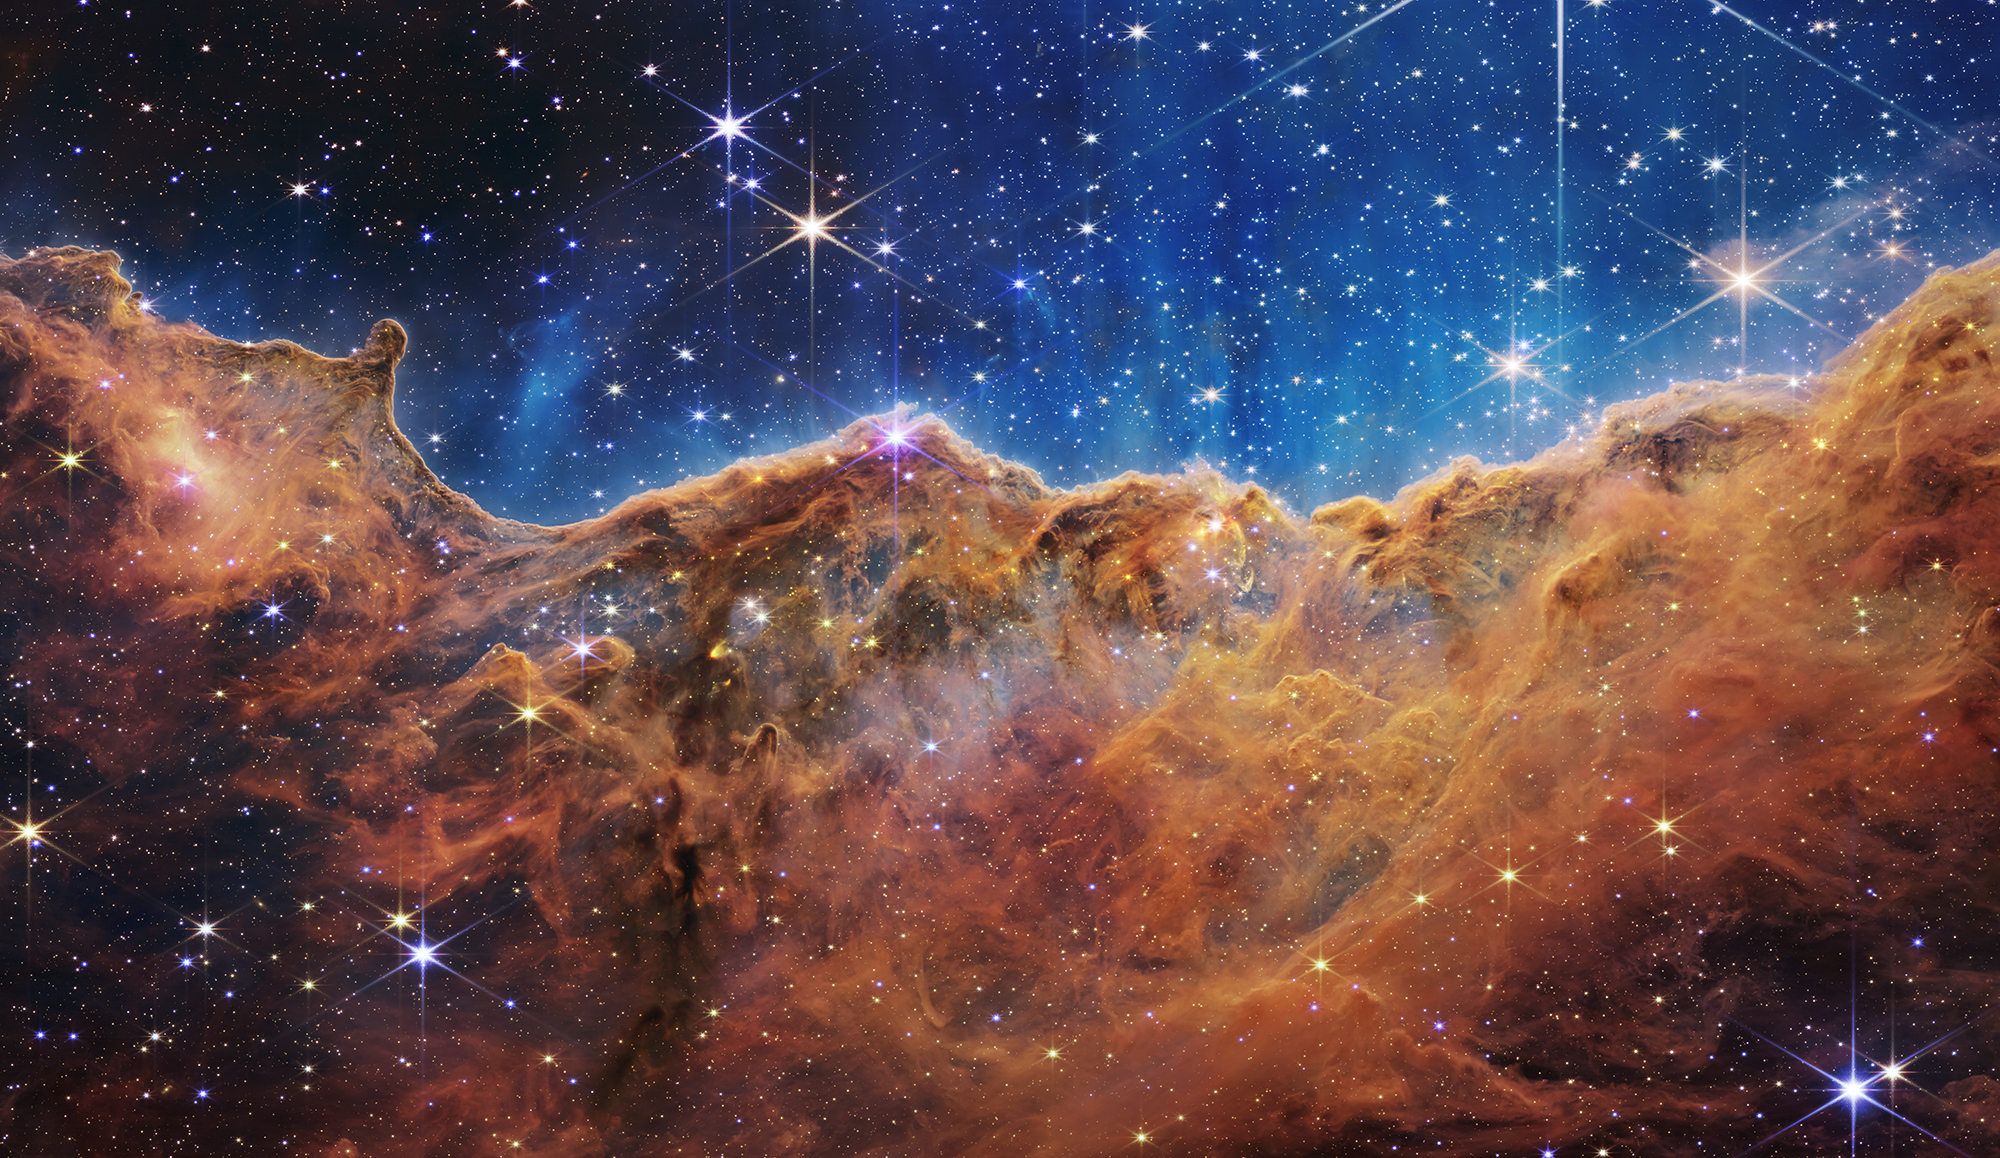 Kính thiên văn James Webb: Kính thiên văn James Webb có khả năng đưa chúng ta đến gần hơn với những vì sao và hành tinh ngoài hệ mặt trời. Nó được trang bị những công nghệ tiên tiến nhất để thu thập dữ liệu và giúp các nhà khoa học tìm ra các câu trả lời cho những điều chúng ta vẫn chưa hiểu. Đón xem các hình ảnh được chụp từ Kính thiên văn James Webb và tìm hiểu về những bí ẩn thú vị của vũ trụ!